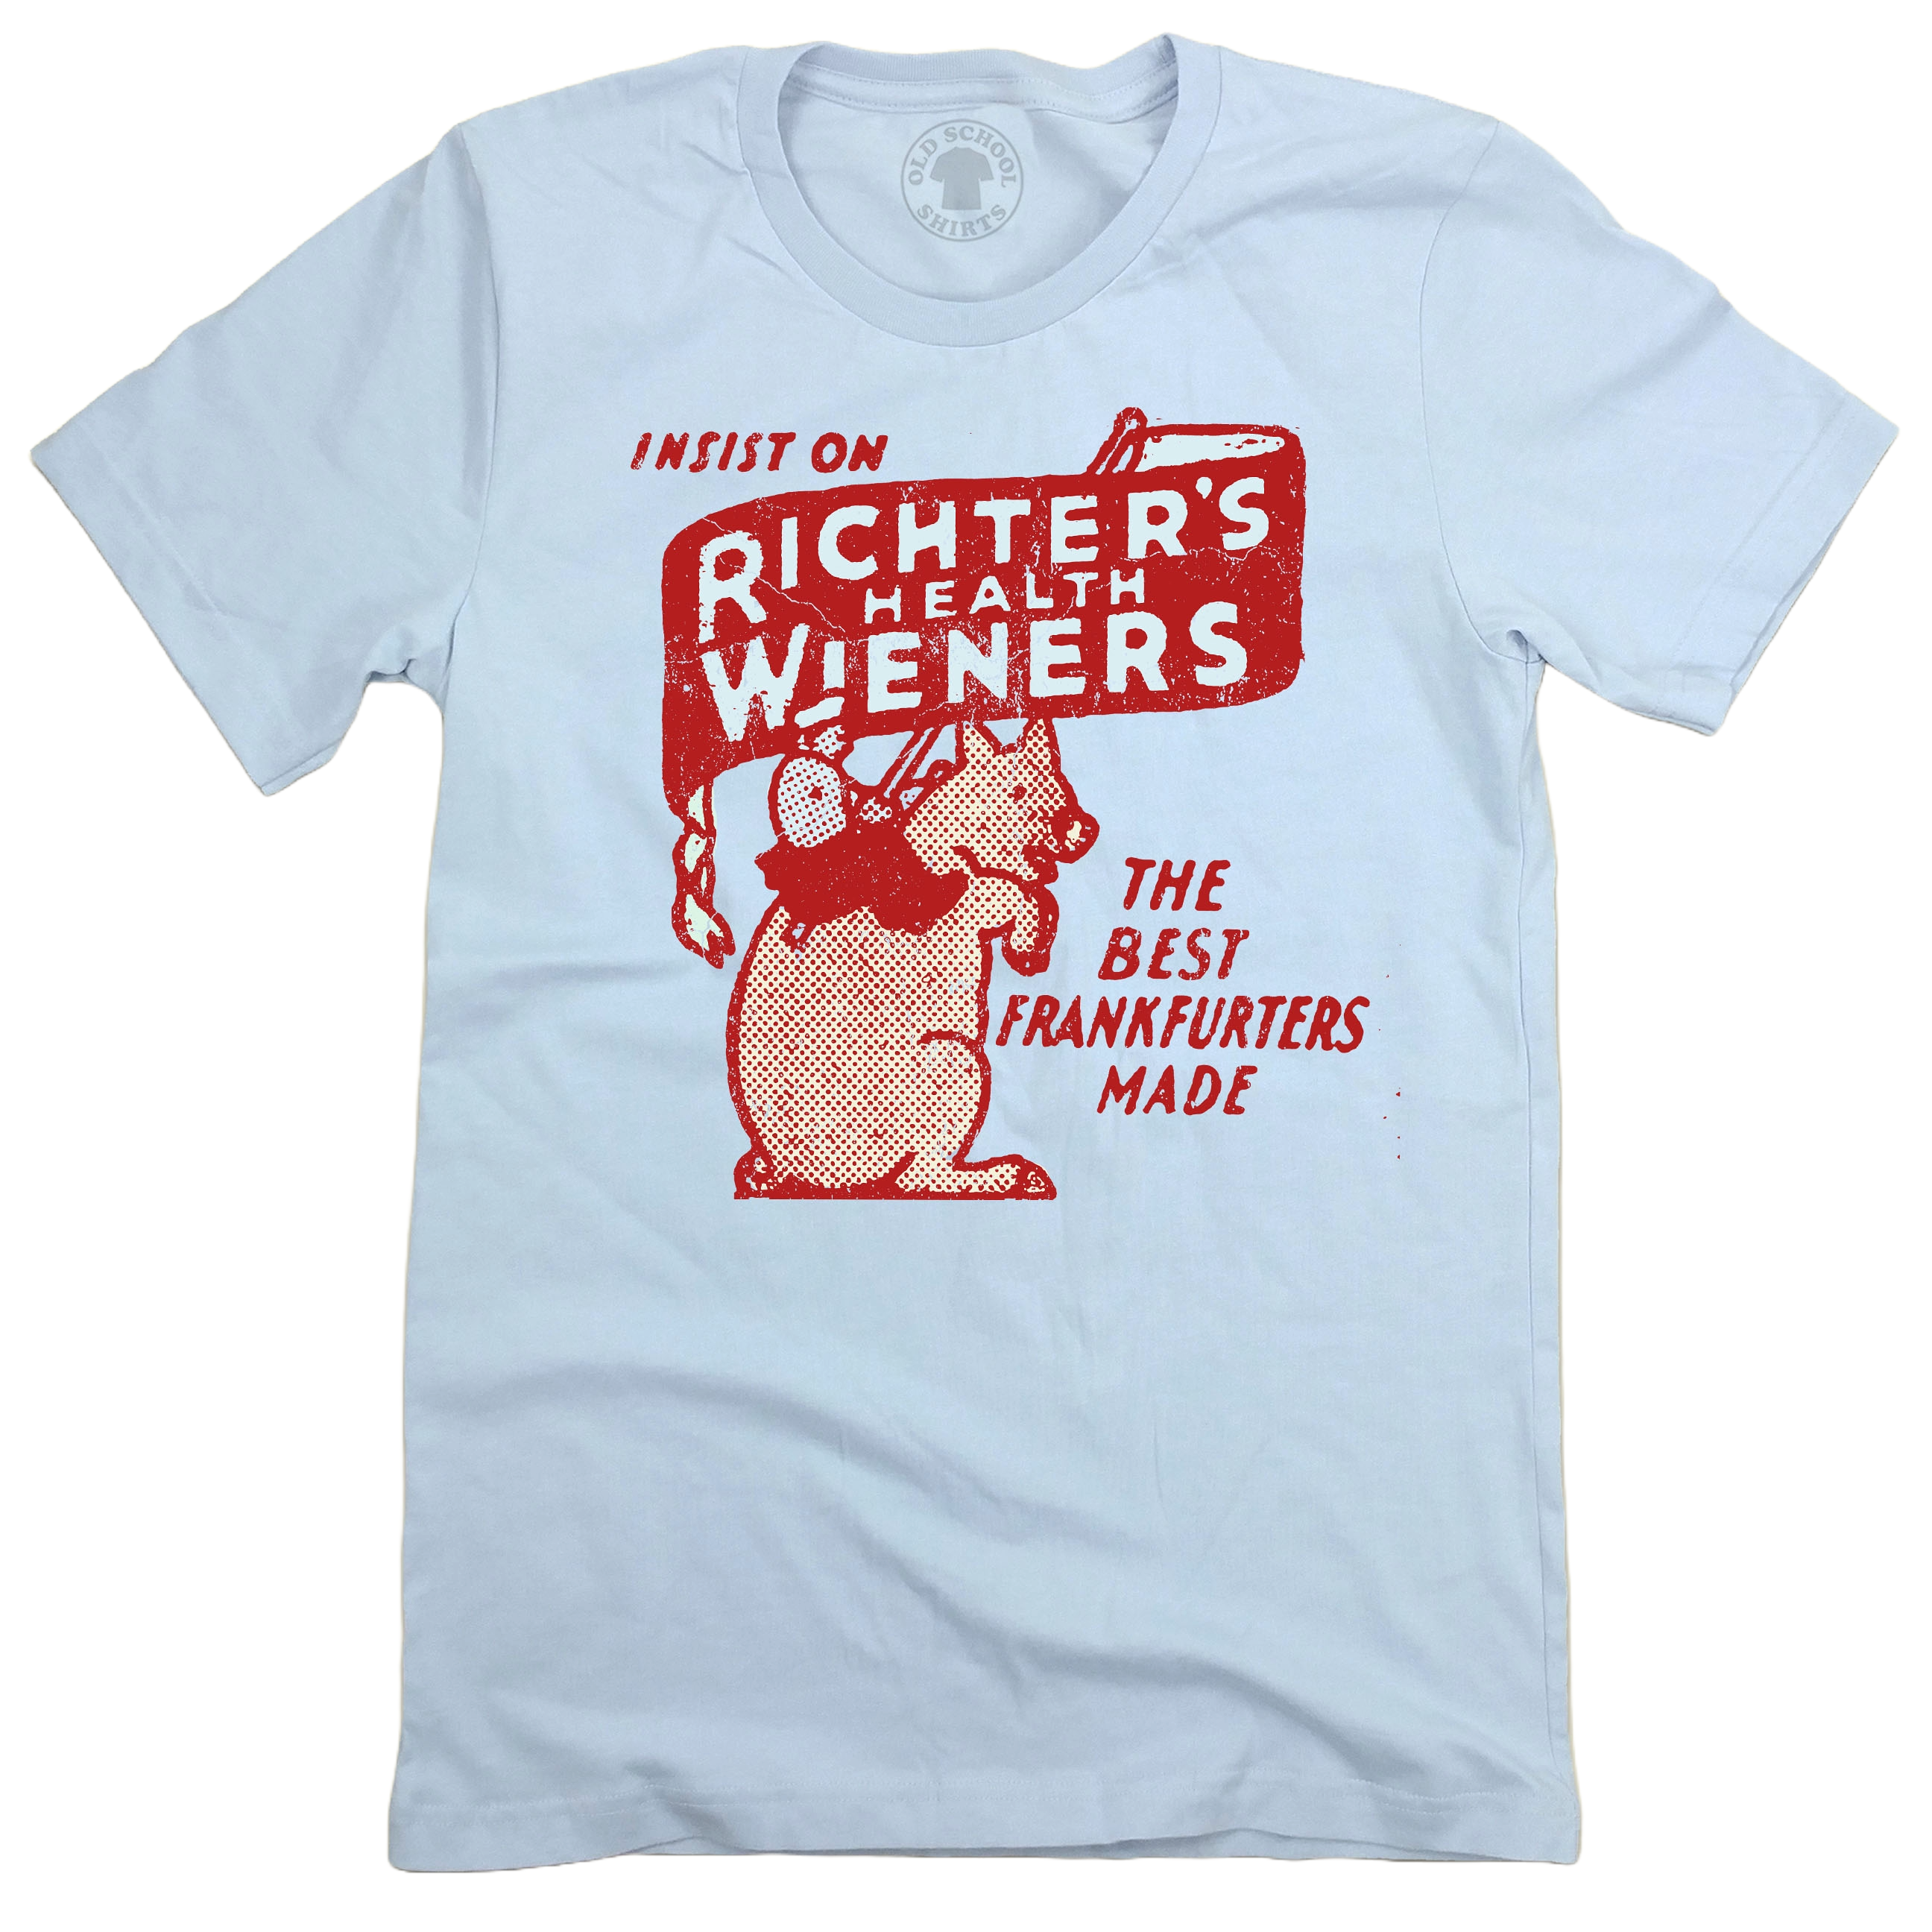 Richter's Health Wieners Unisex Tee